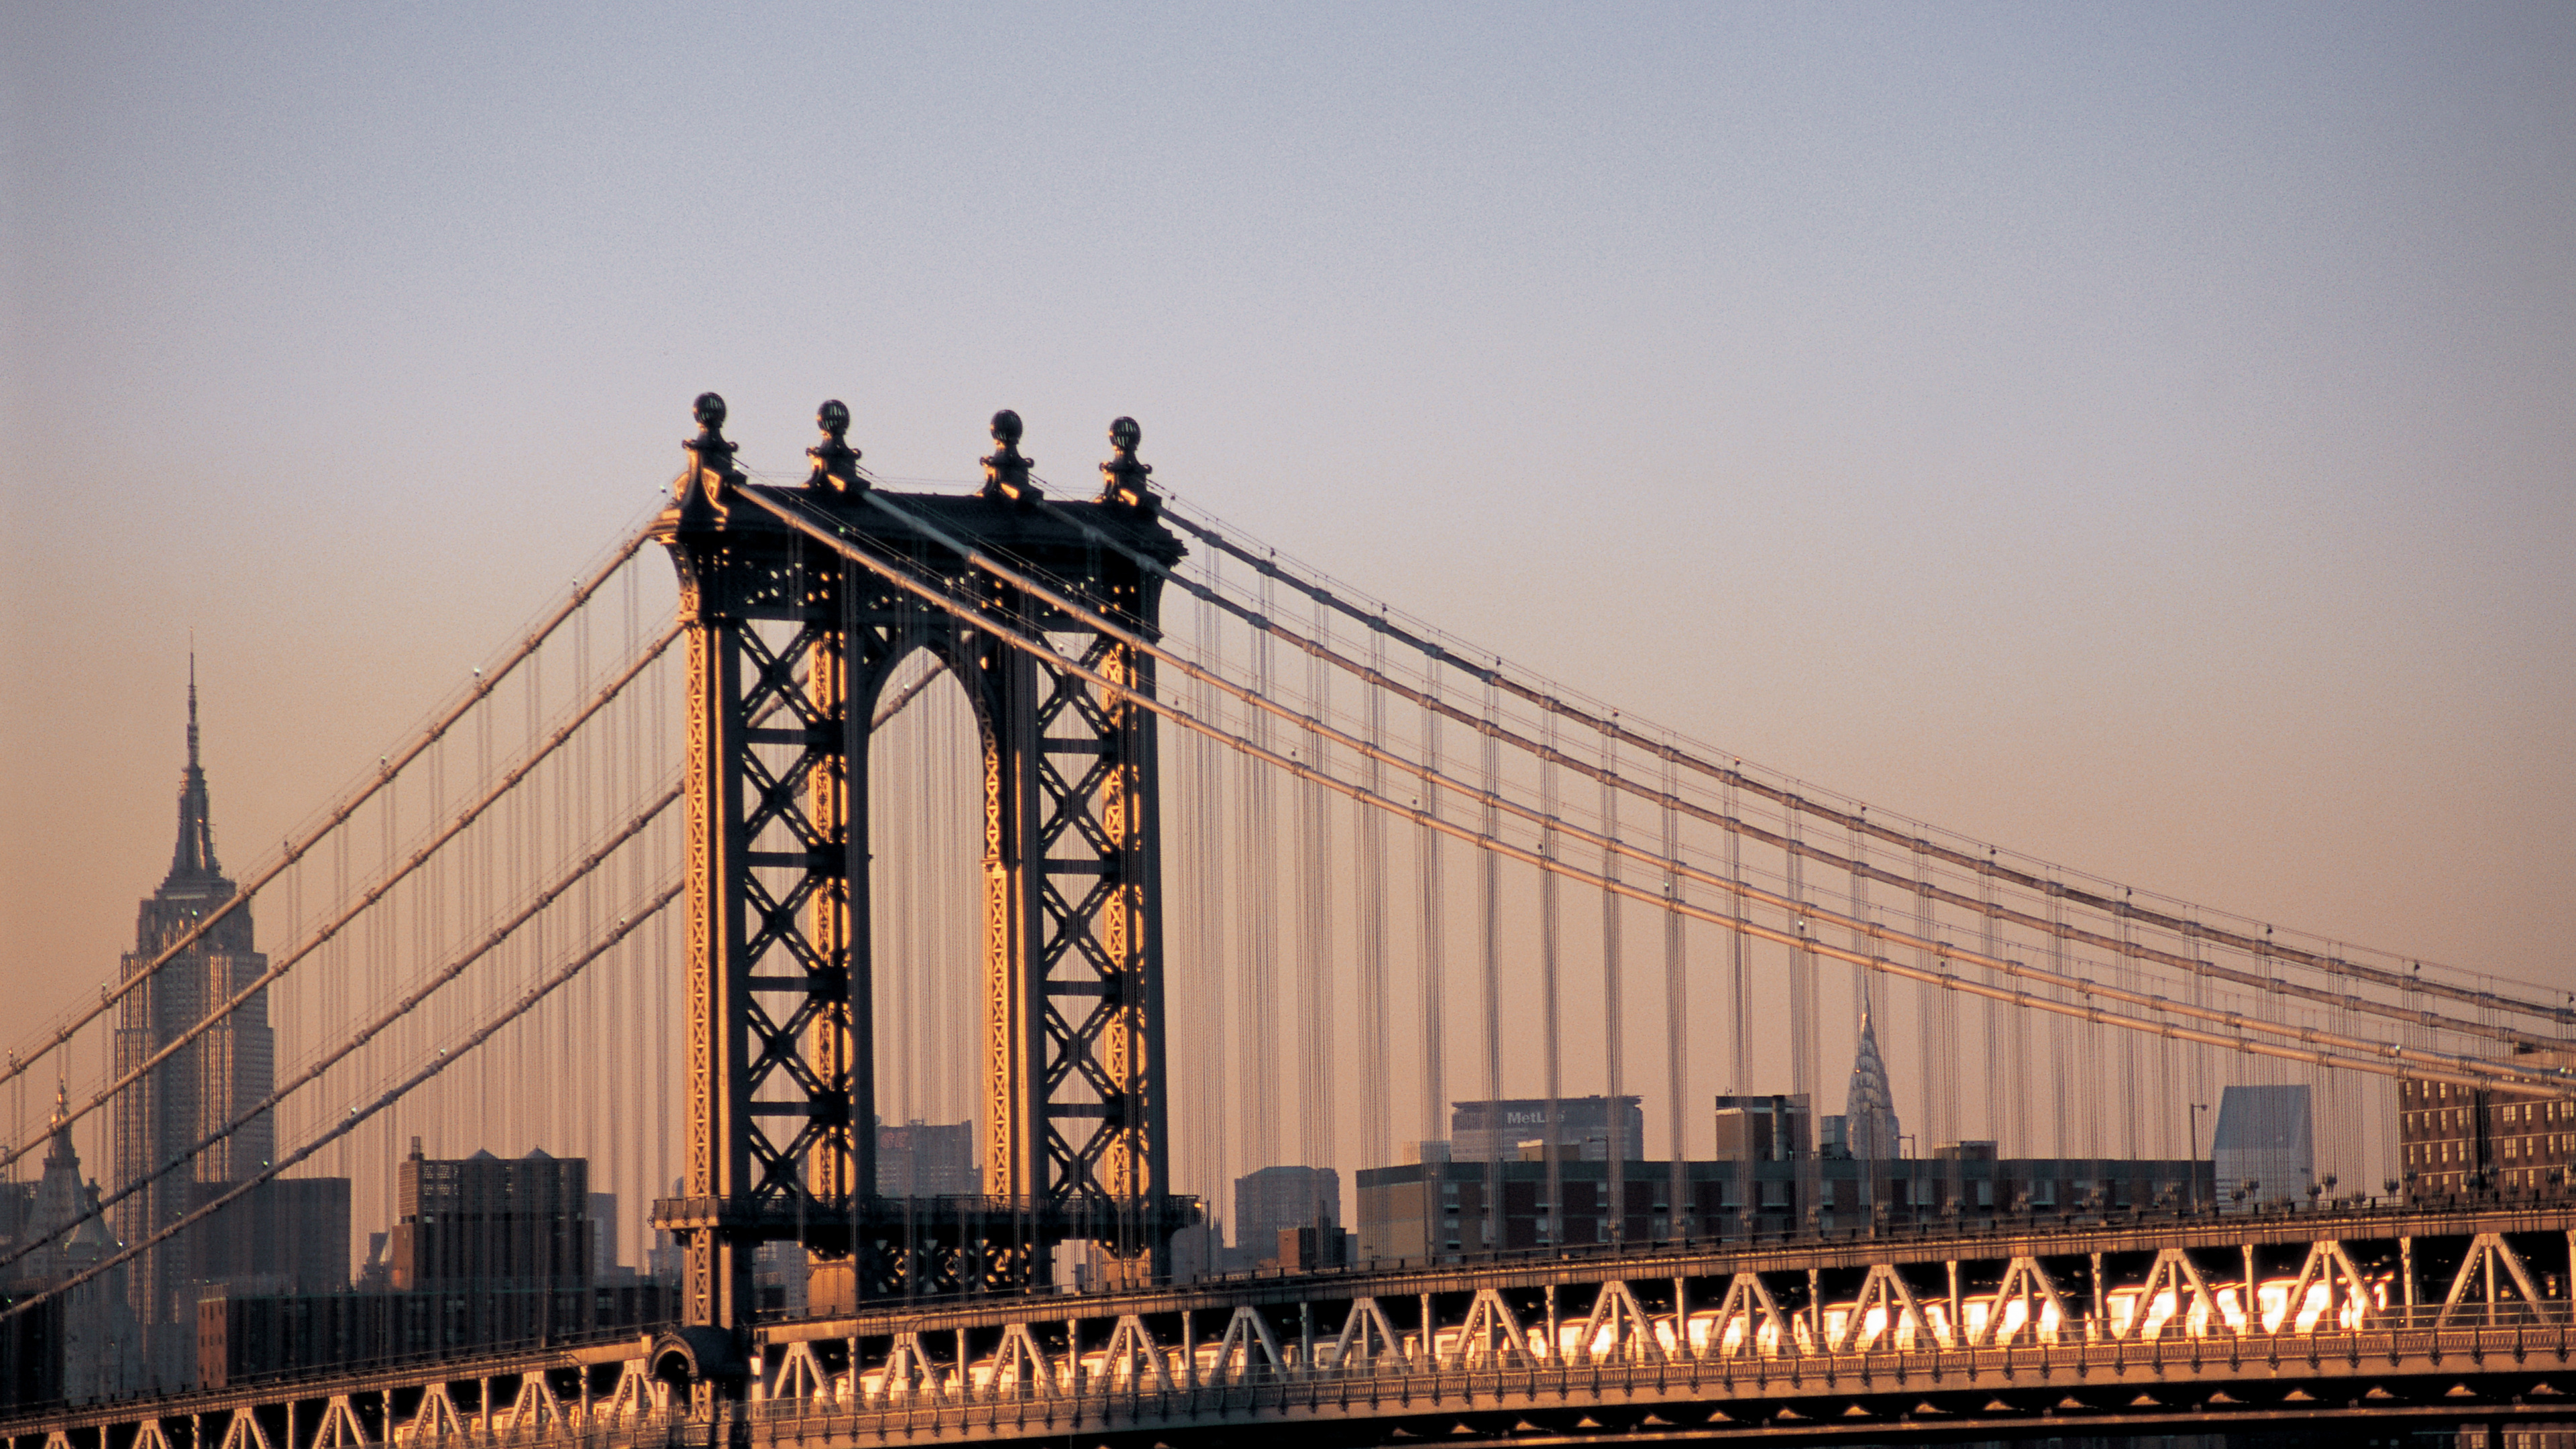 布鲁克林大桥, 曼哈顿大桥, 有线桥, 里程碑, 城市 壁纸 3840x2160 允许